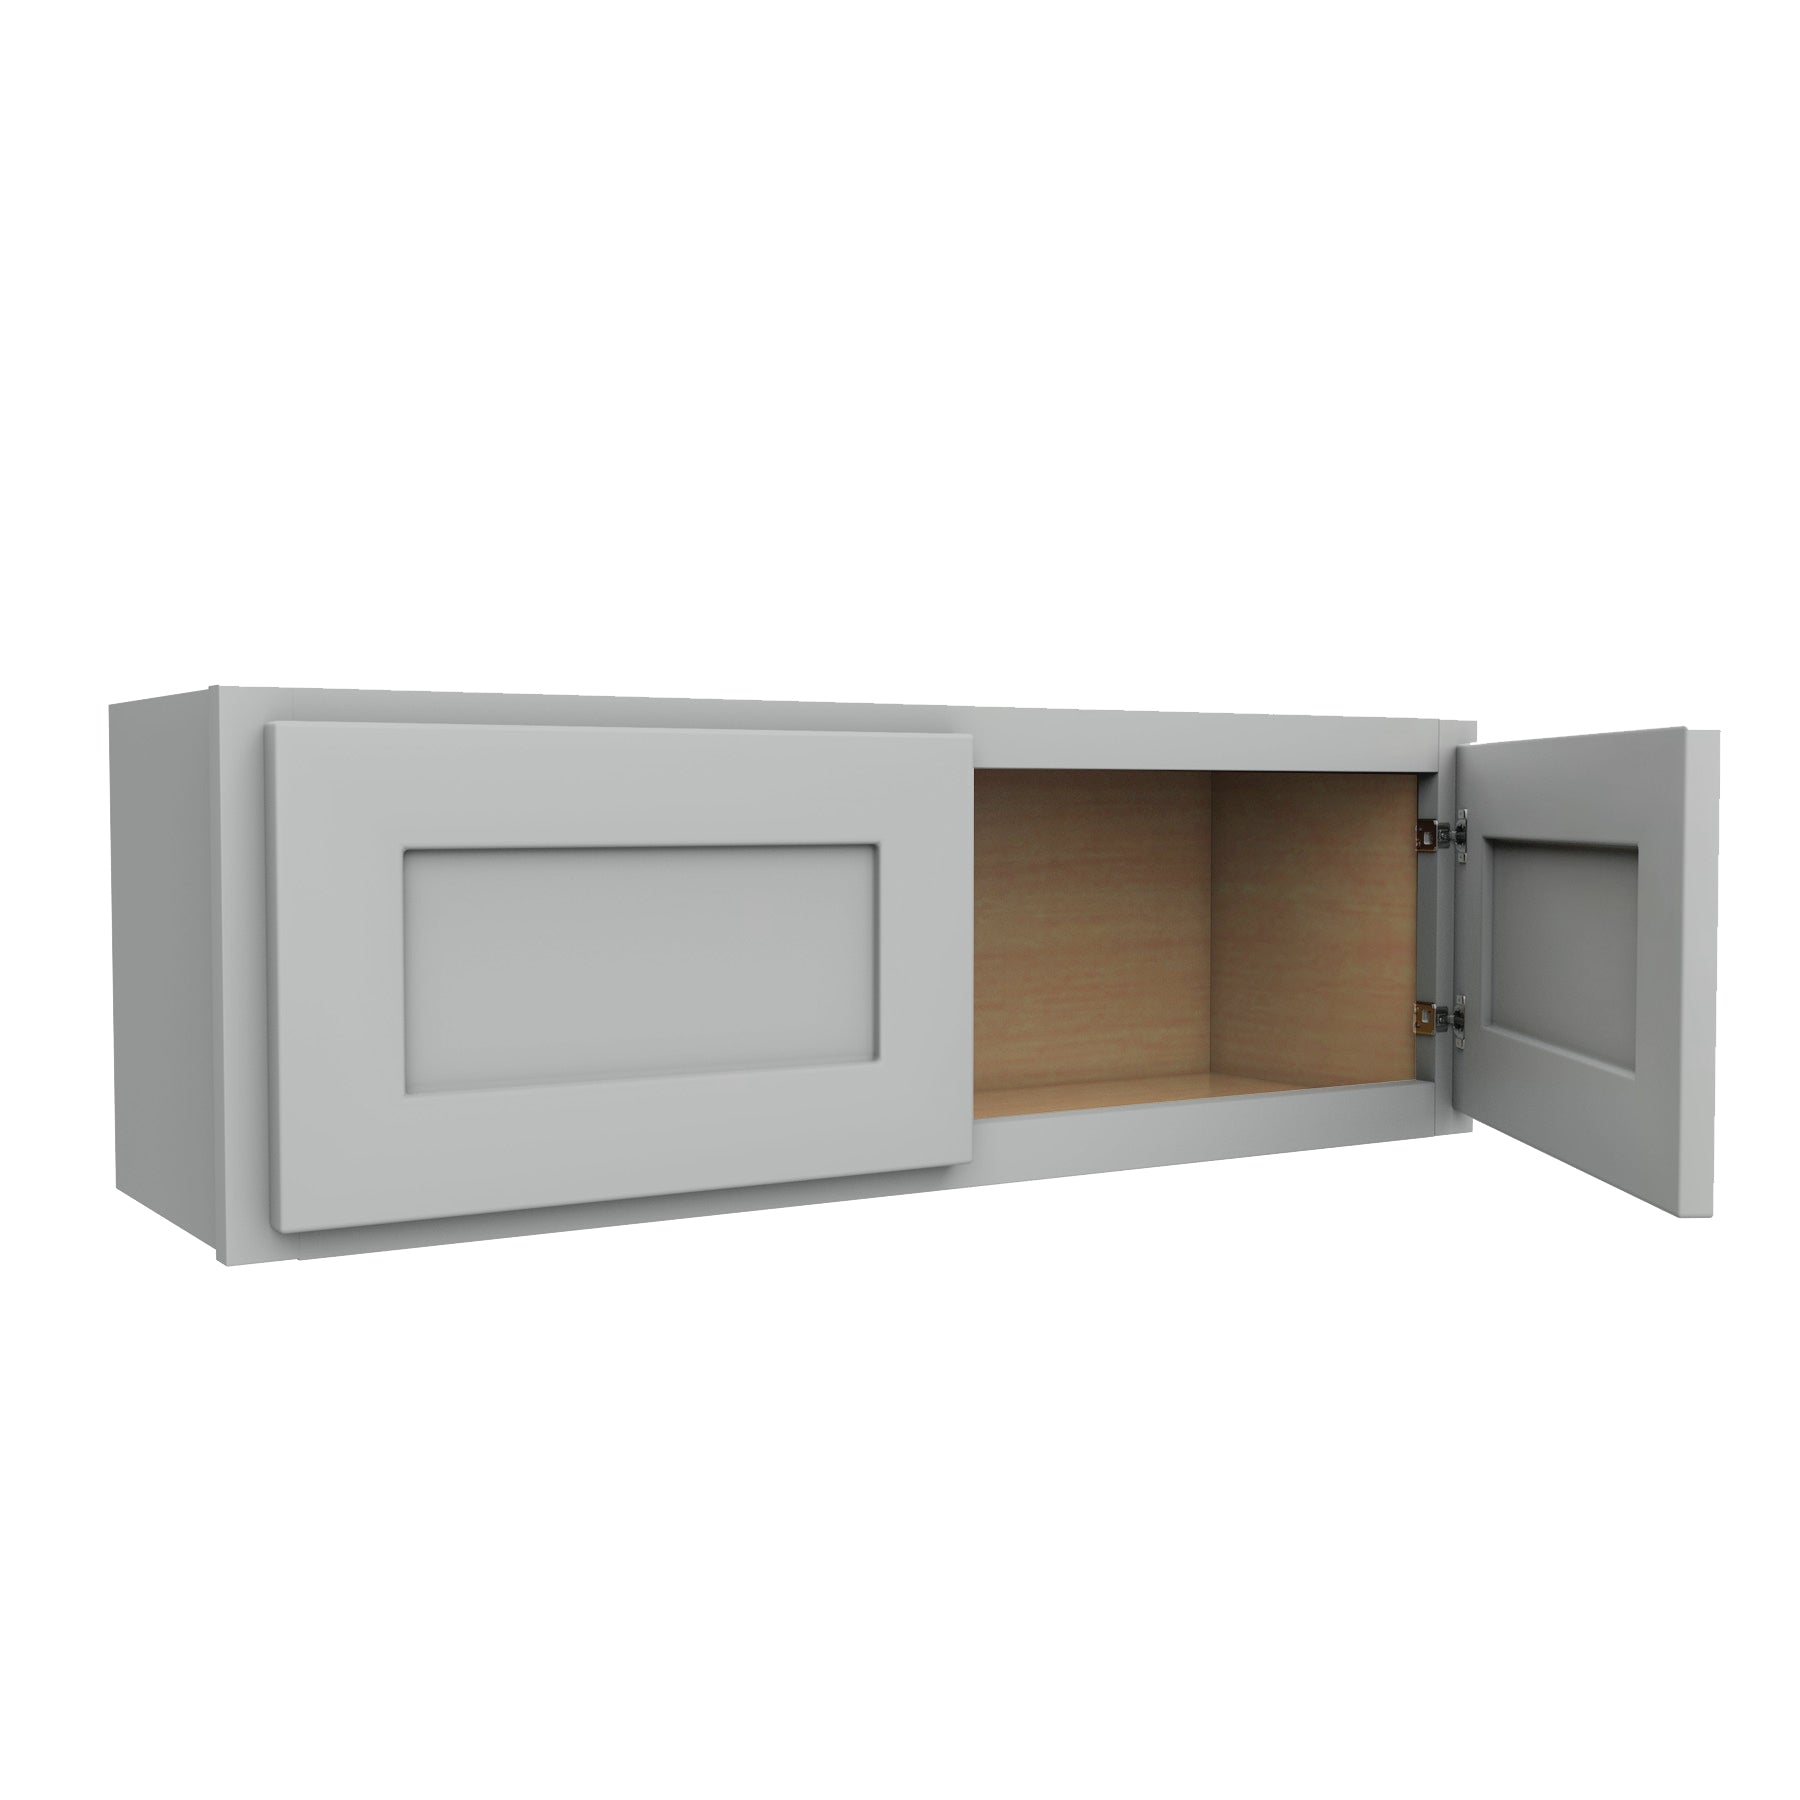 Luxor Misty Grey - Double Door Wall Cabinet | 36"W x 12"H x 12"D